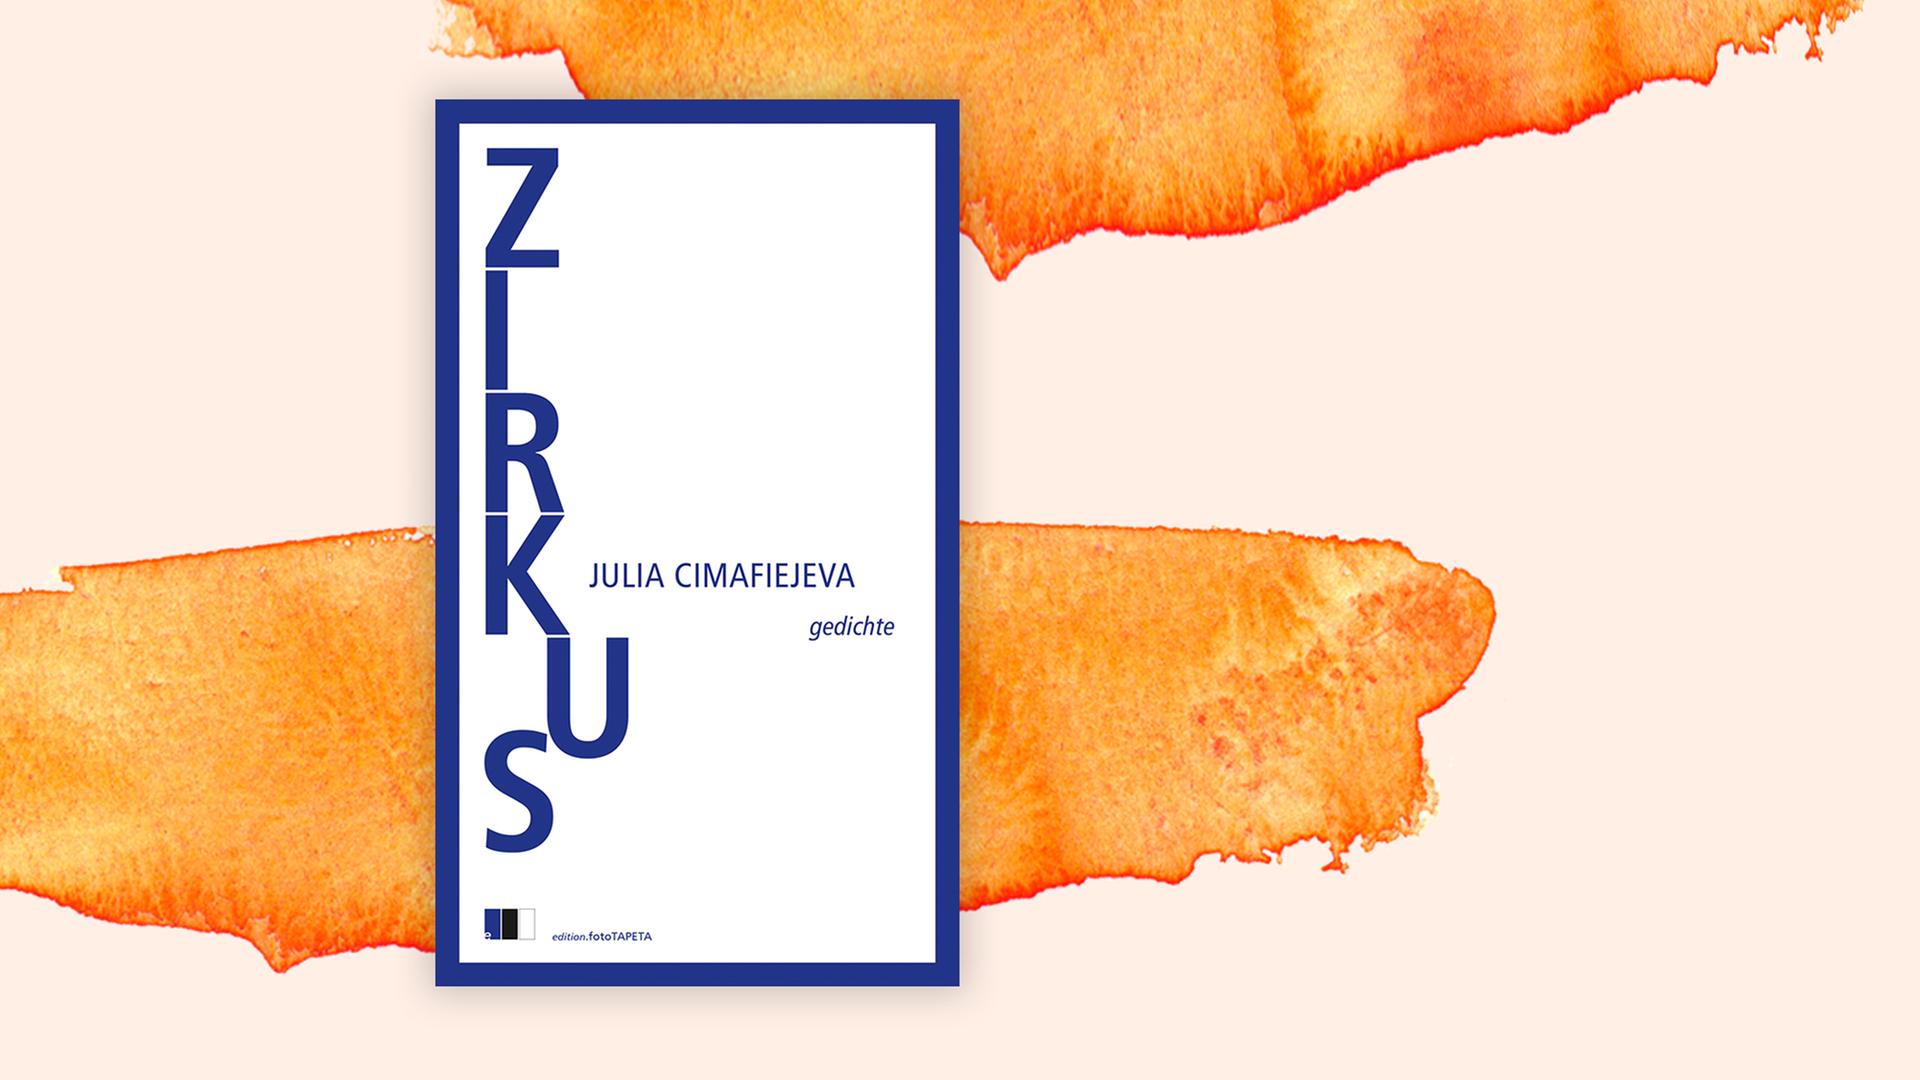 Das Bild zeigt das Cover des Gedichtbandes "Zirkus" von Julia Cimafiejeva.